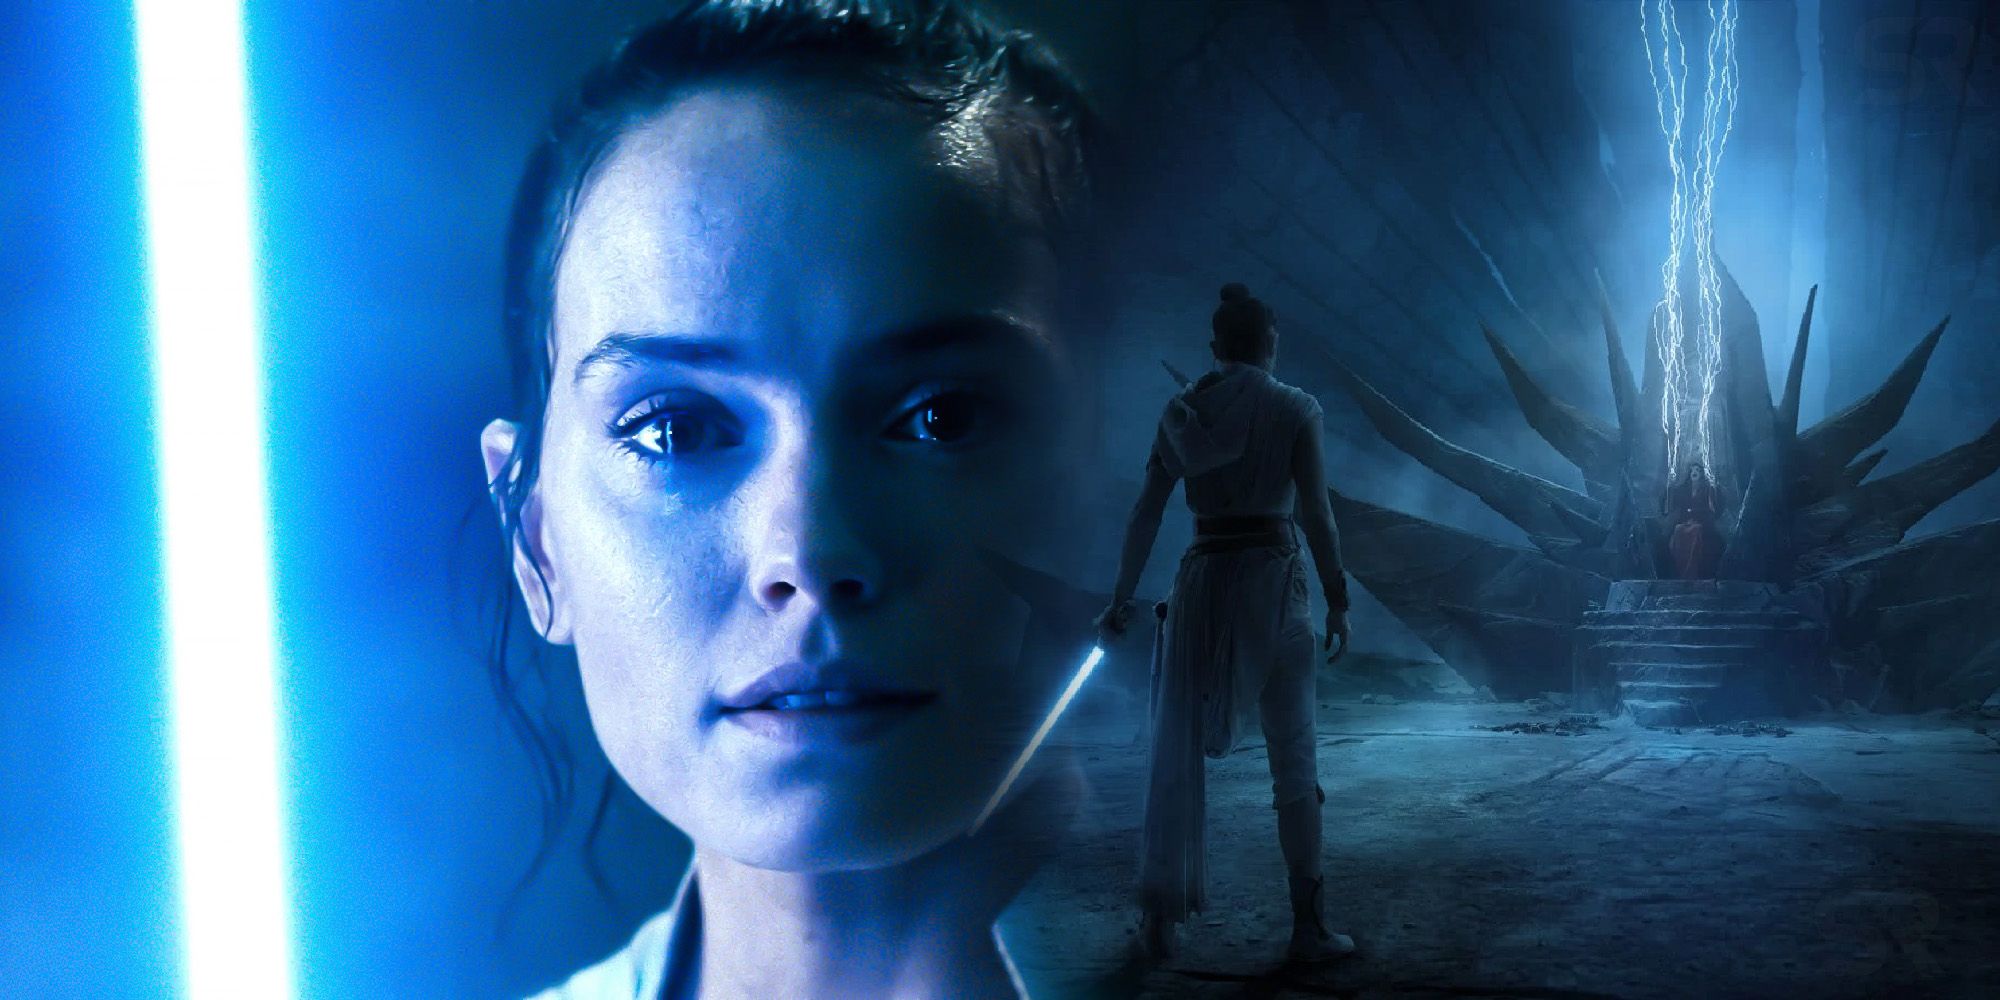 "No llegaron tantas ofertas" después del ascenso de Skywalker, admite Daisy Ridley